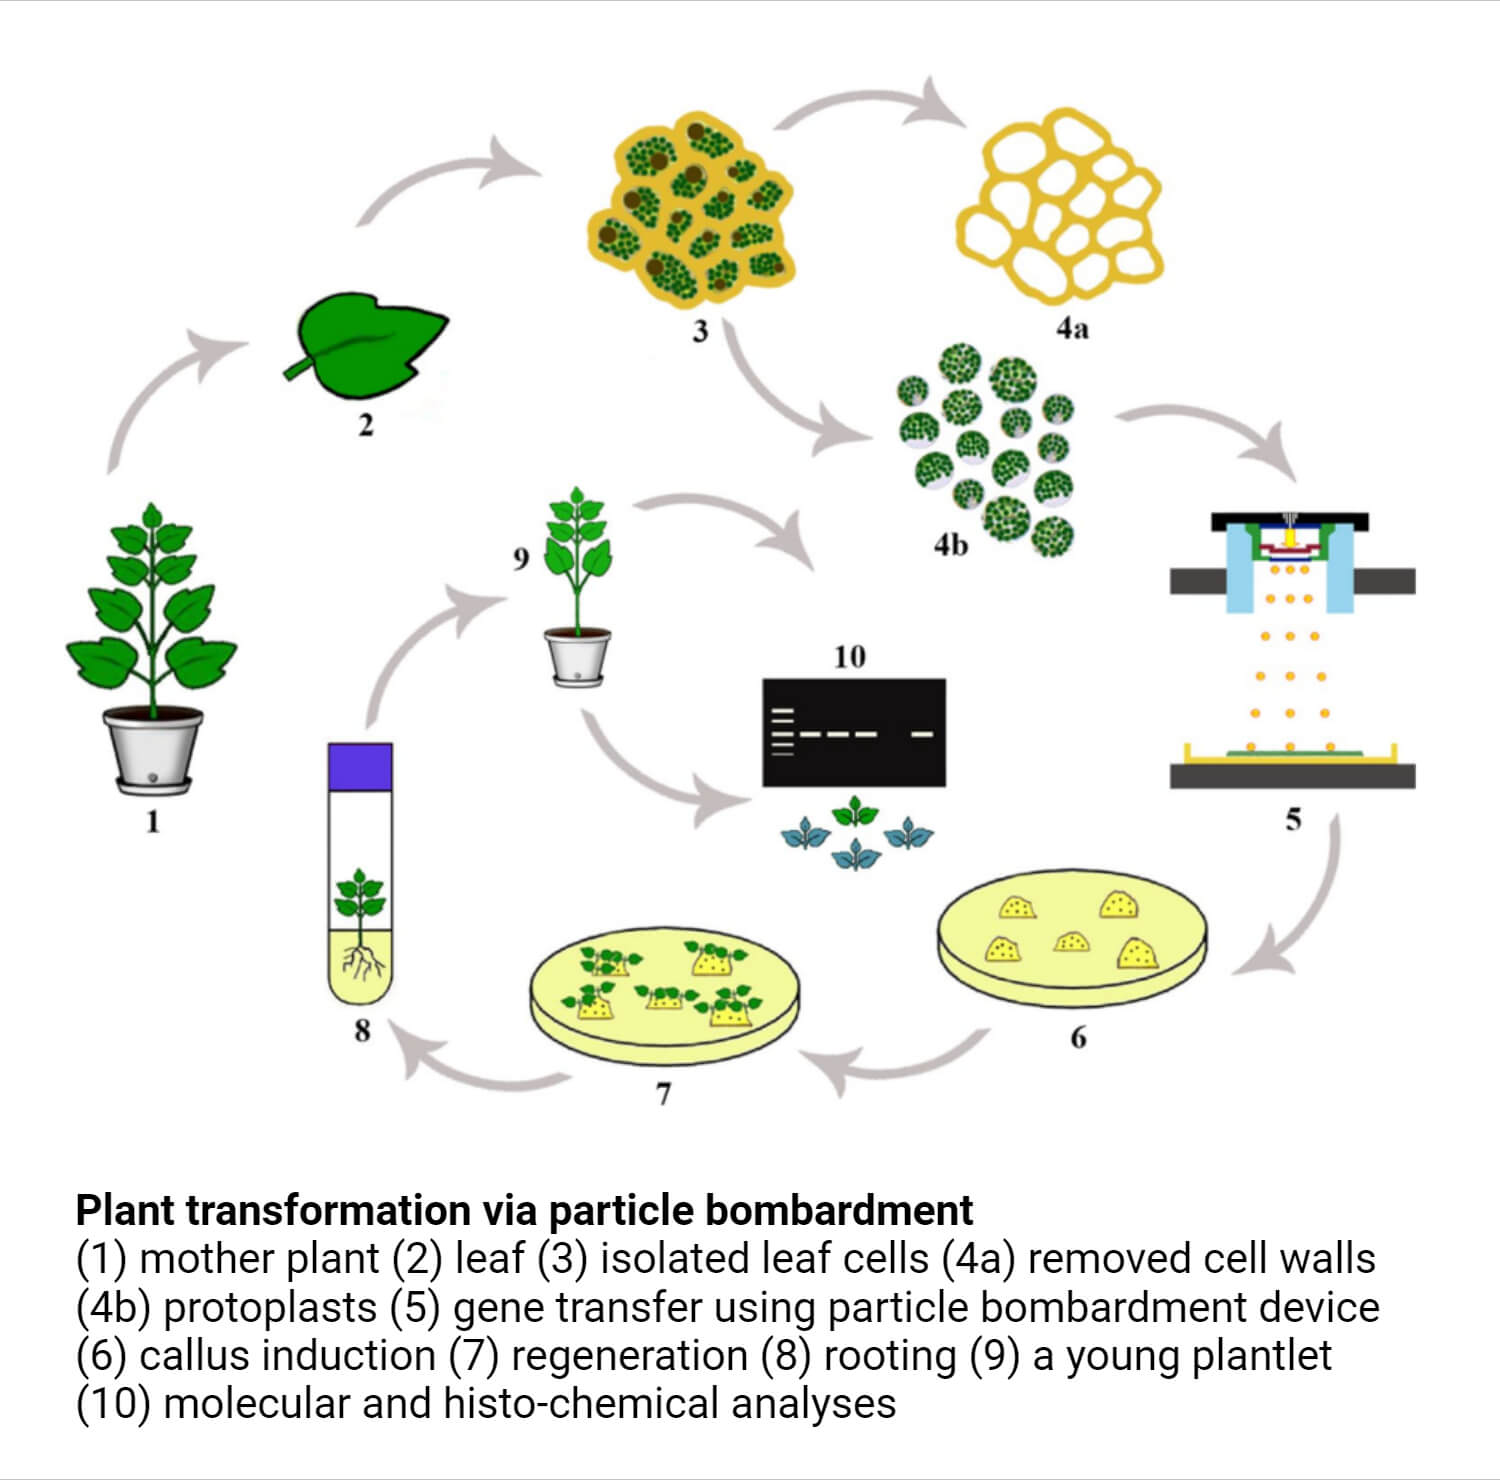 Plant transformation via particle bombardment